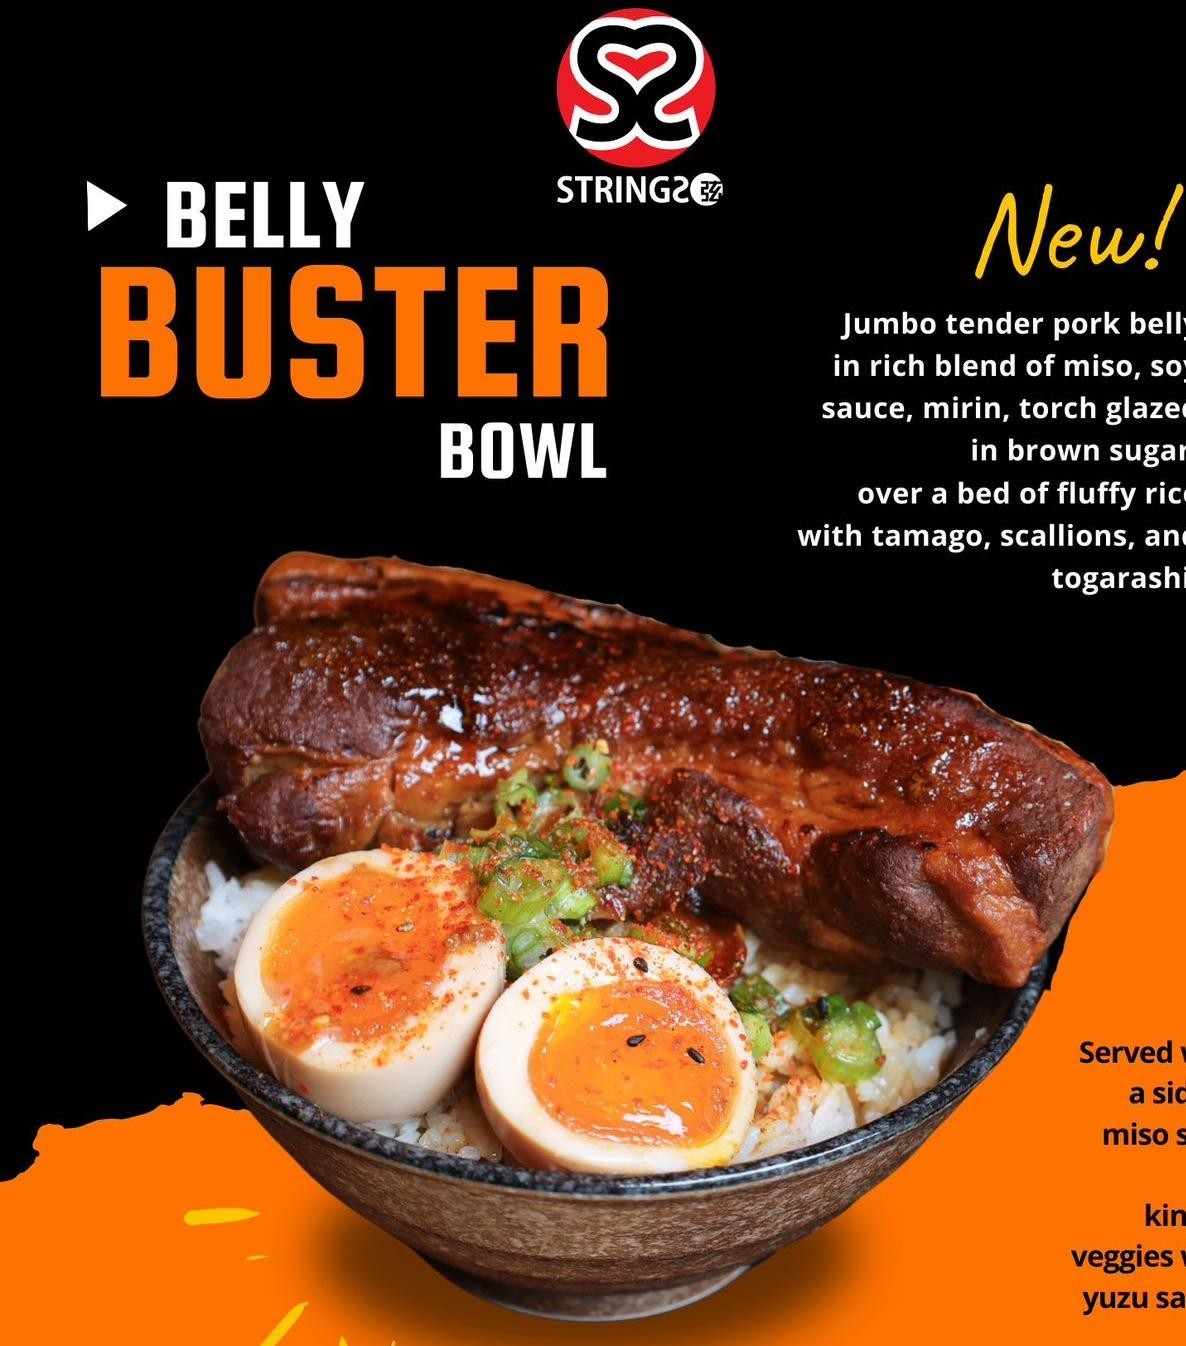 Belly Buster (Jumbo tender pork belly) rice bowl